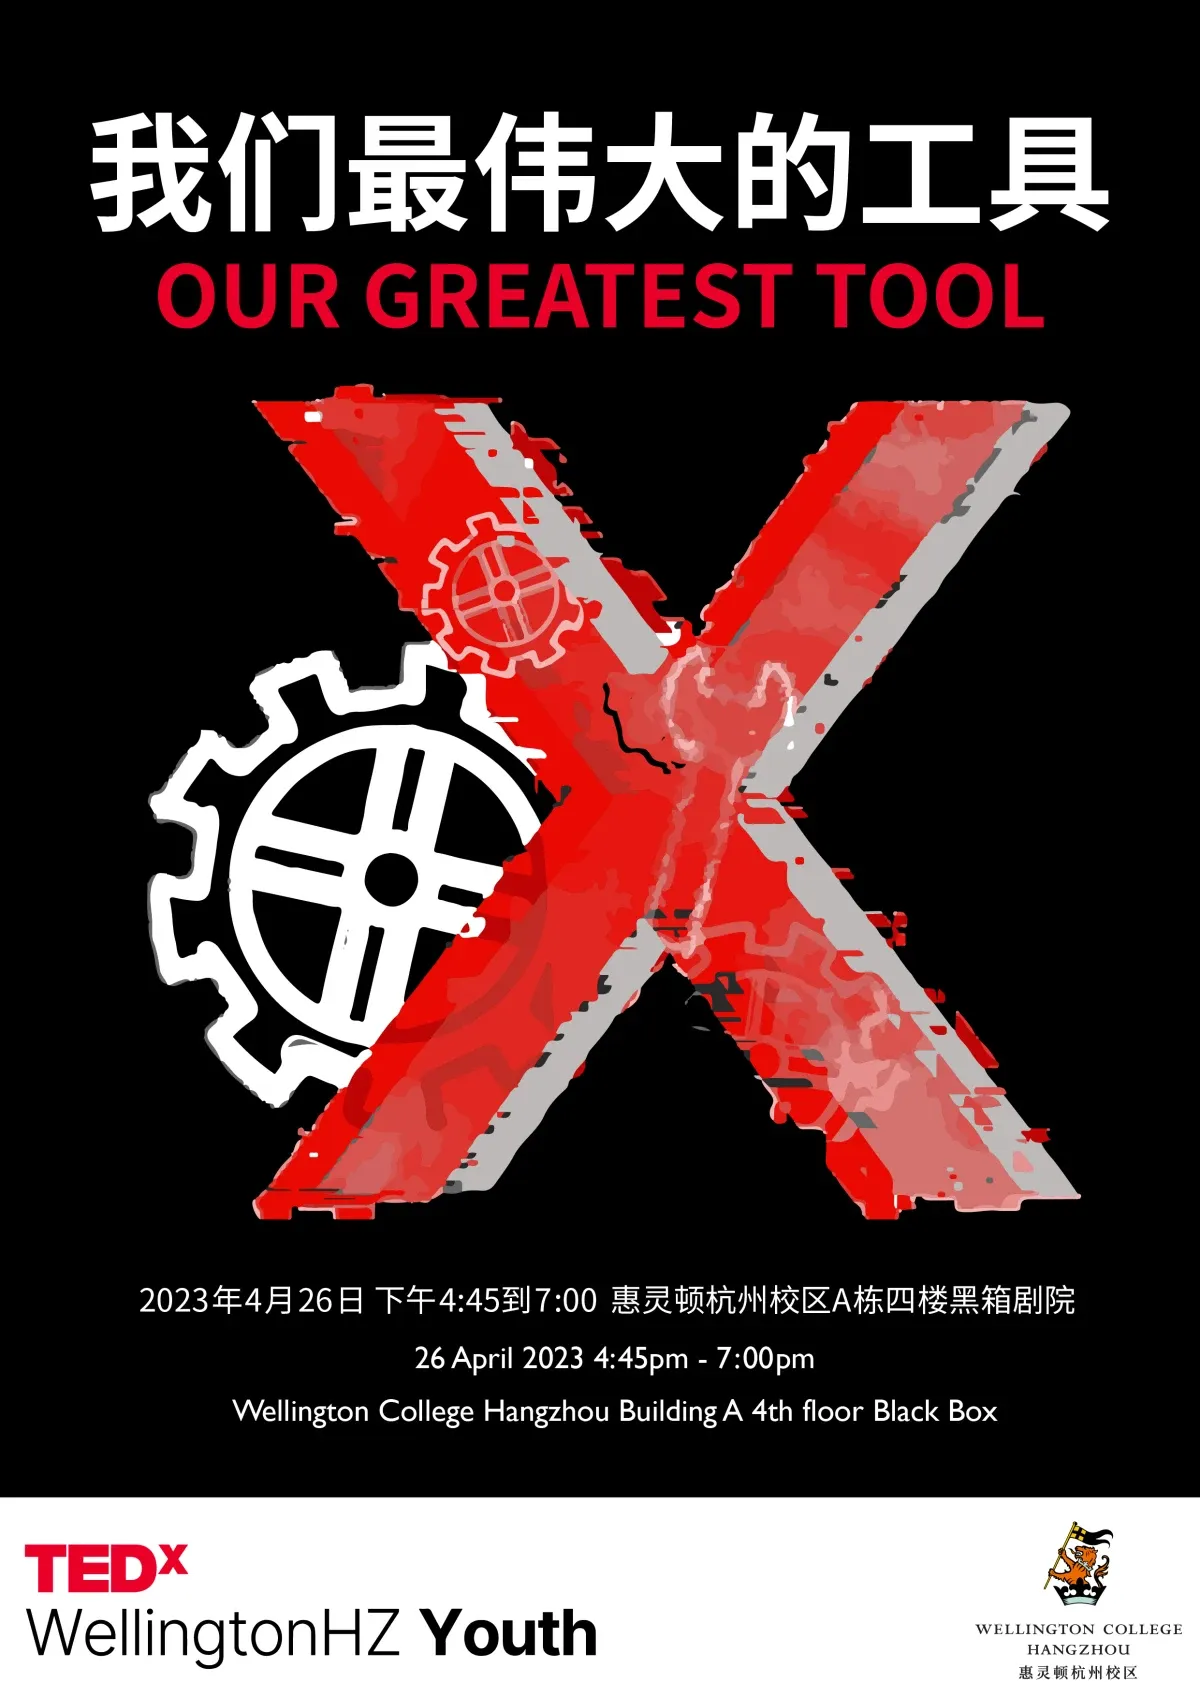 惠灵顿杭州校区首场TEDx青年演讲重磅来袭！新时代里最伟大的工具有哪些？